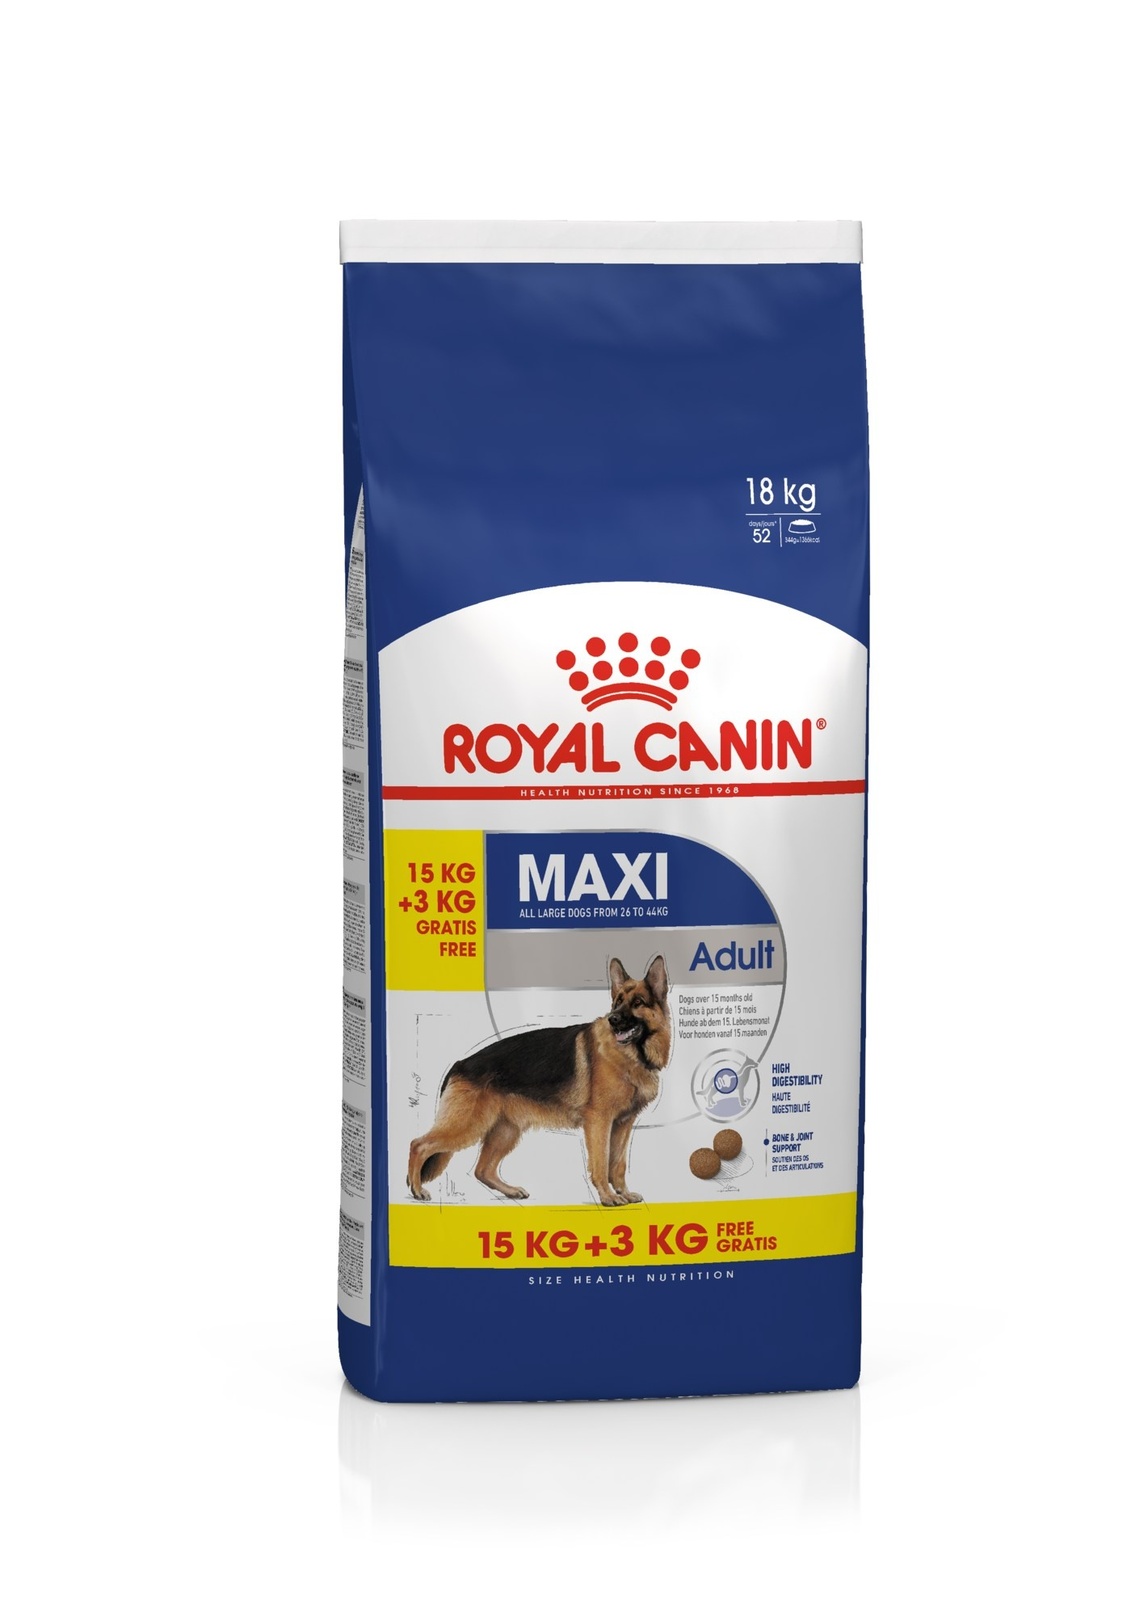 Для взрослых собак крупных пород: 26-44 кг, 15 мес.- 5 лет (3 кг) Royal Canin (сухие корма) Для взрослых собак крупных пород: 26-44 кг, 15 мес.- 5 лет (3 кг) - фото 4